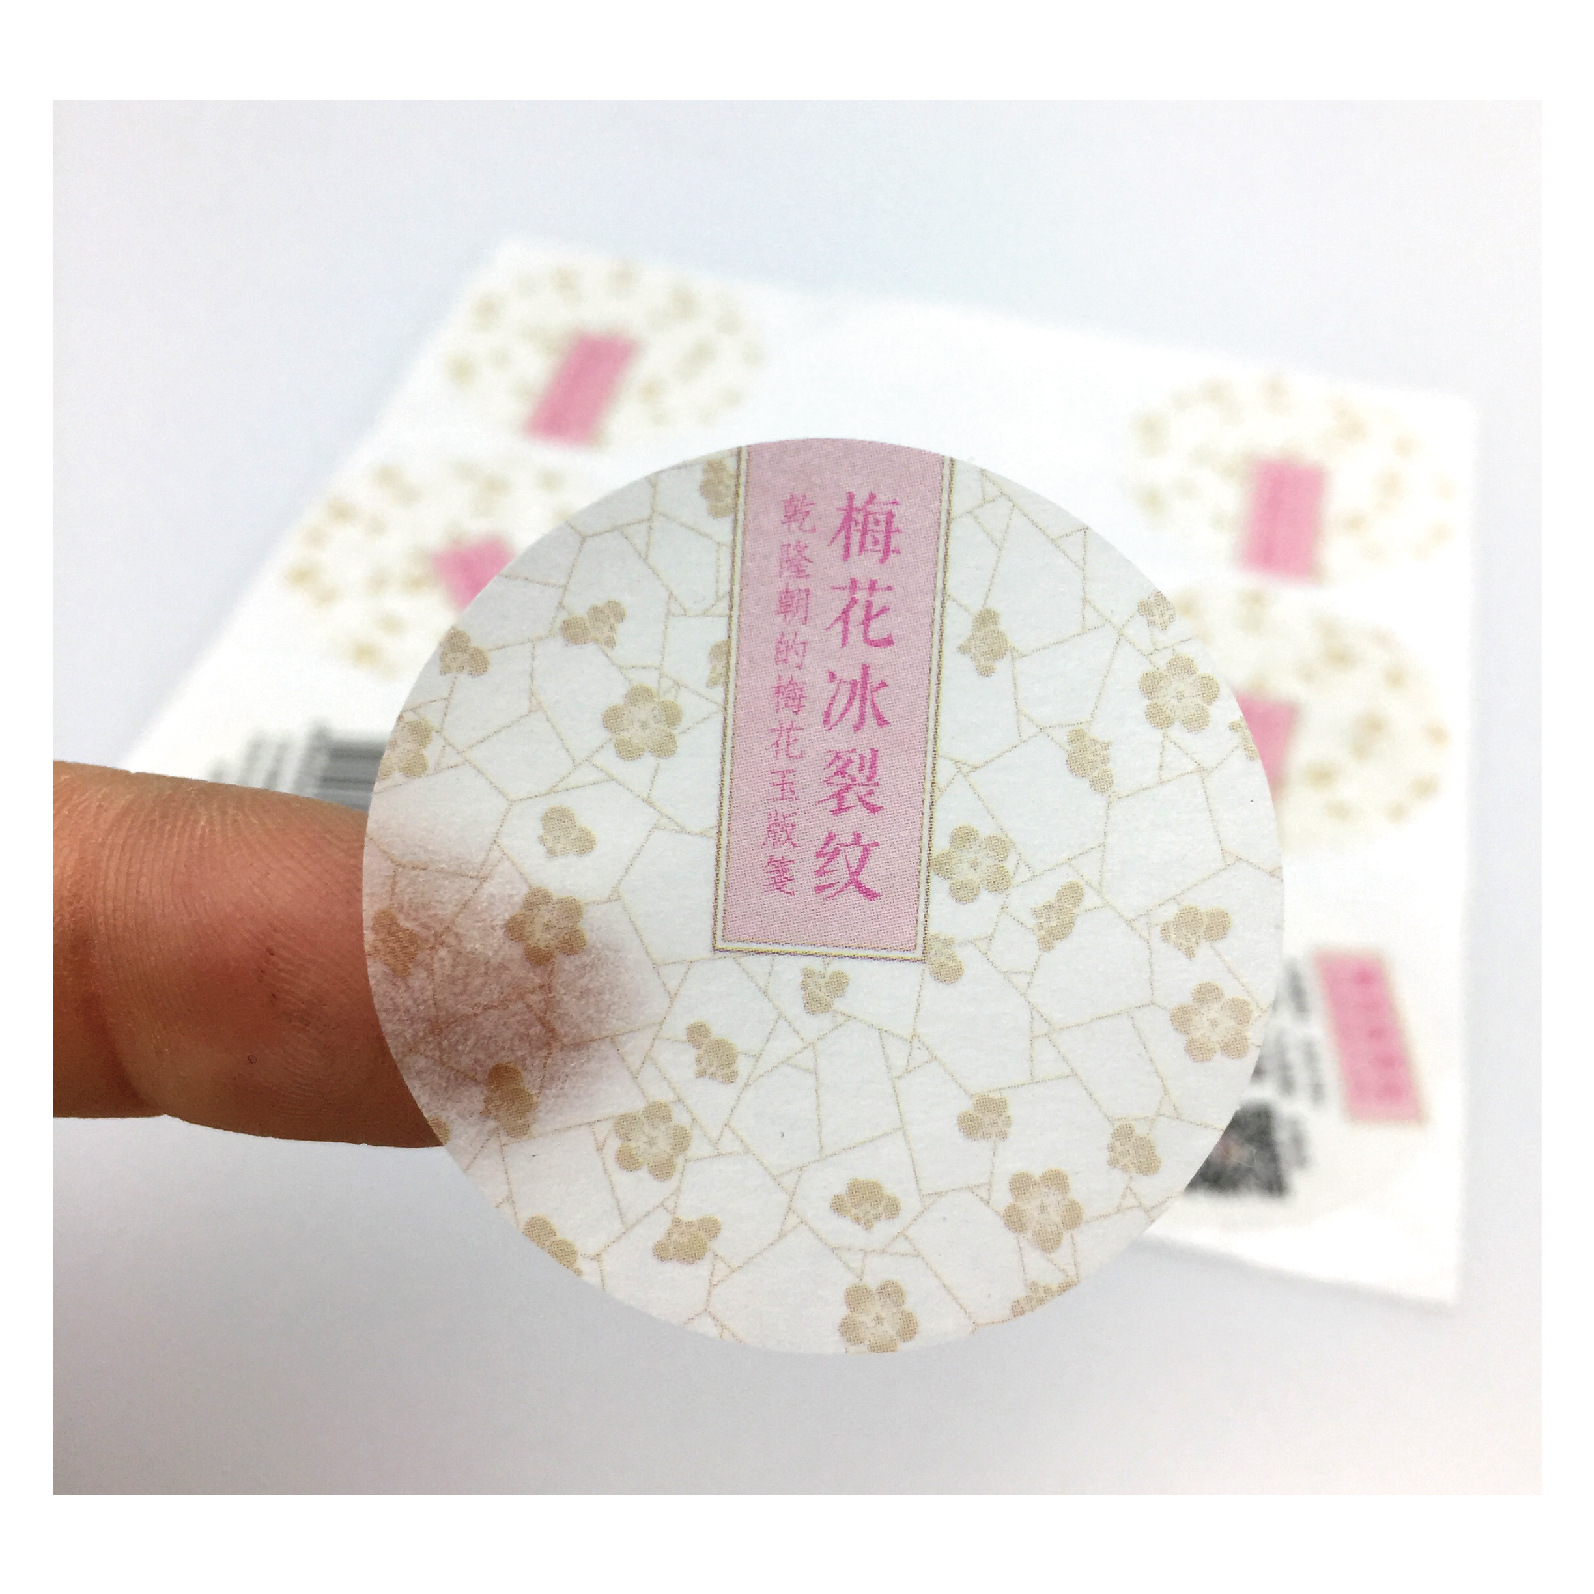 广州佳诚定制新款蔬菜标签 贴纸 水果标签 贴纸厂家 轮转机加工印刷